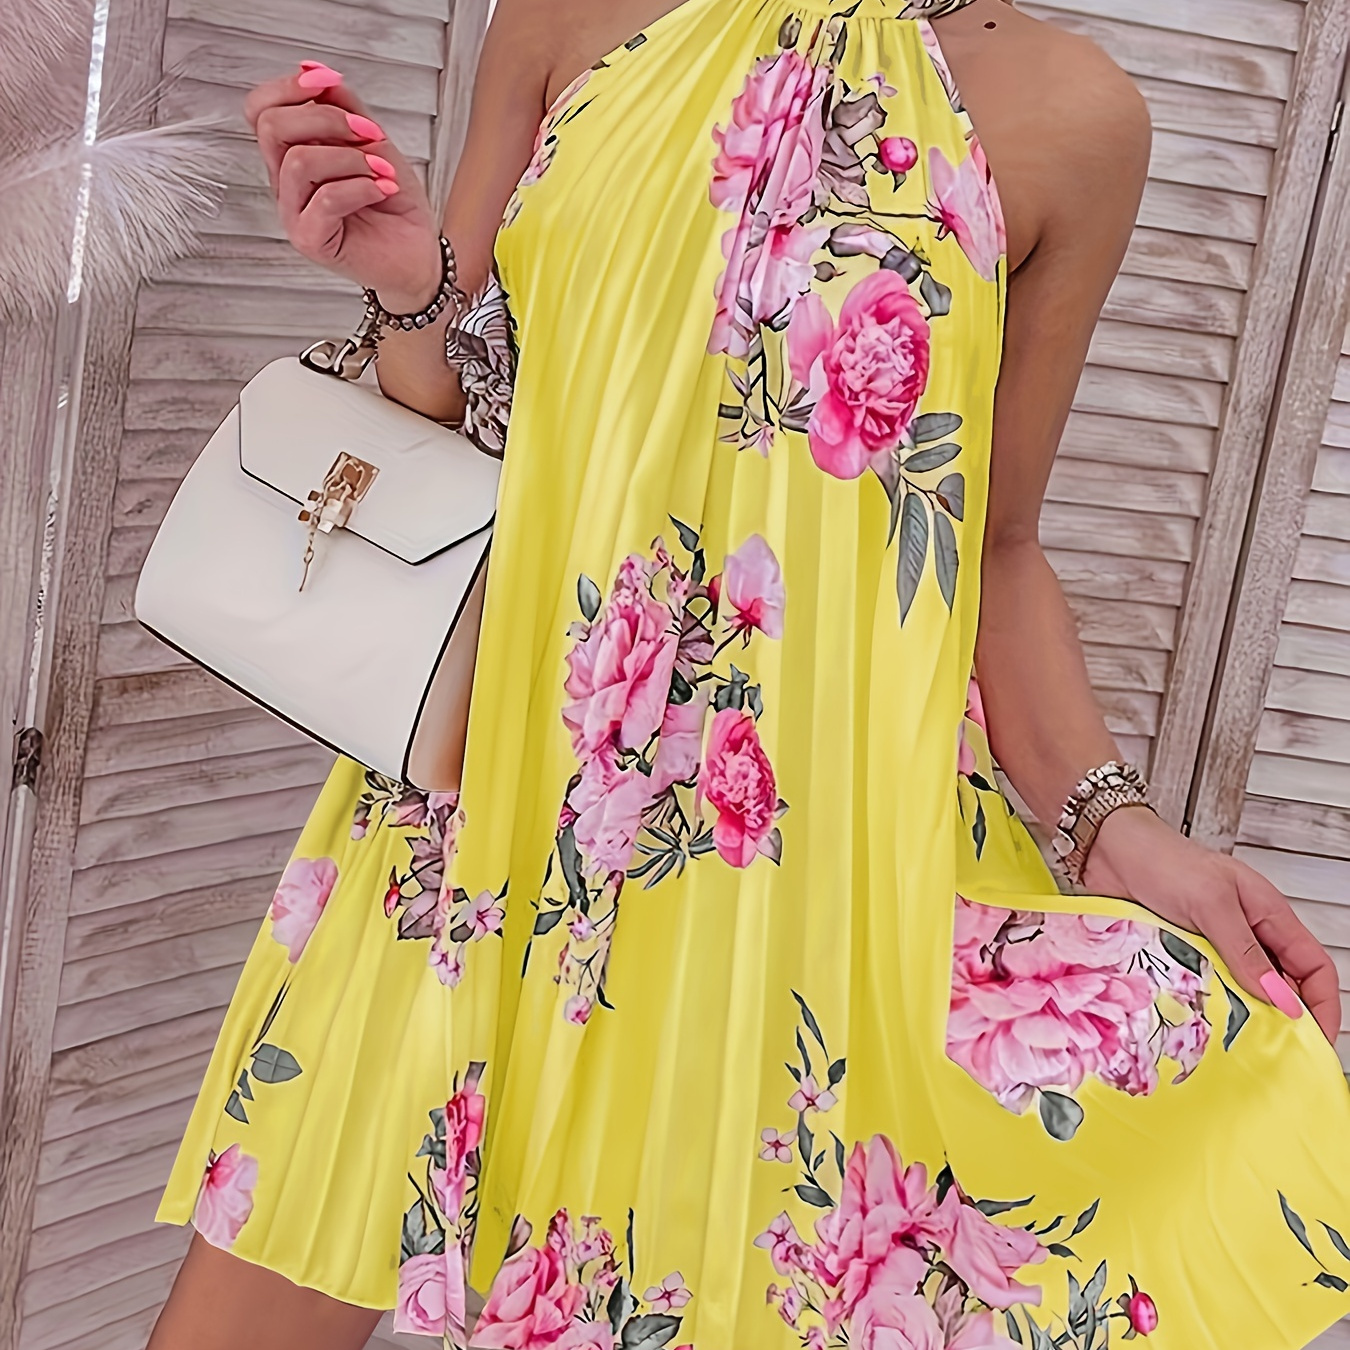 

Floral Print Choker Neck Dress, Elegant Sleeveless Pleat Dress For Spring & Summer, Women's Clothing